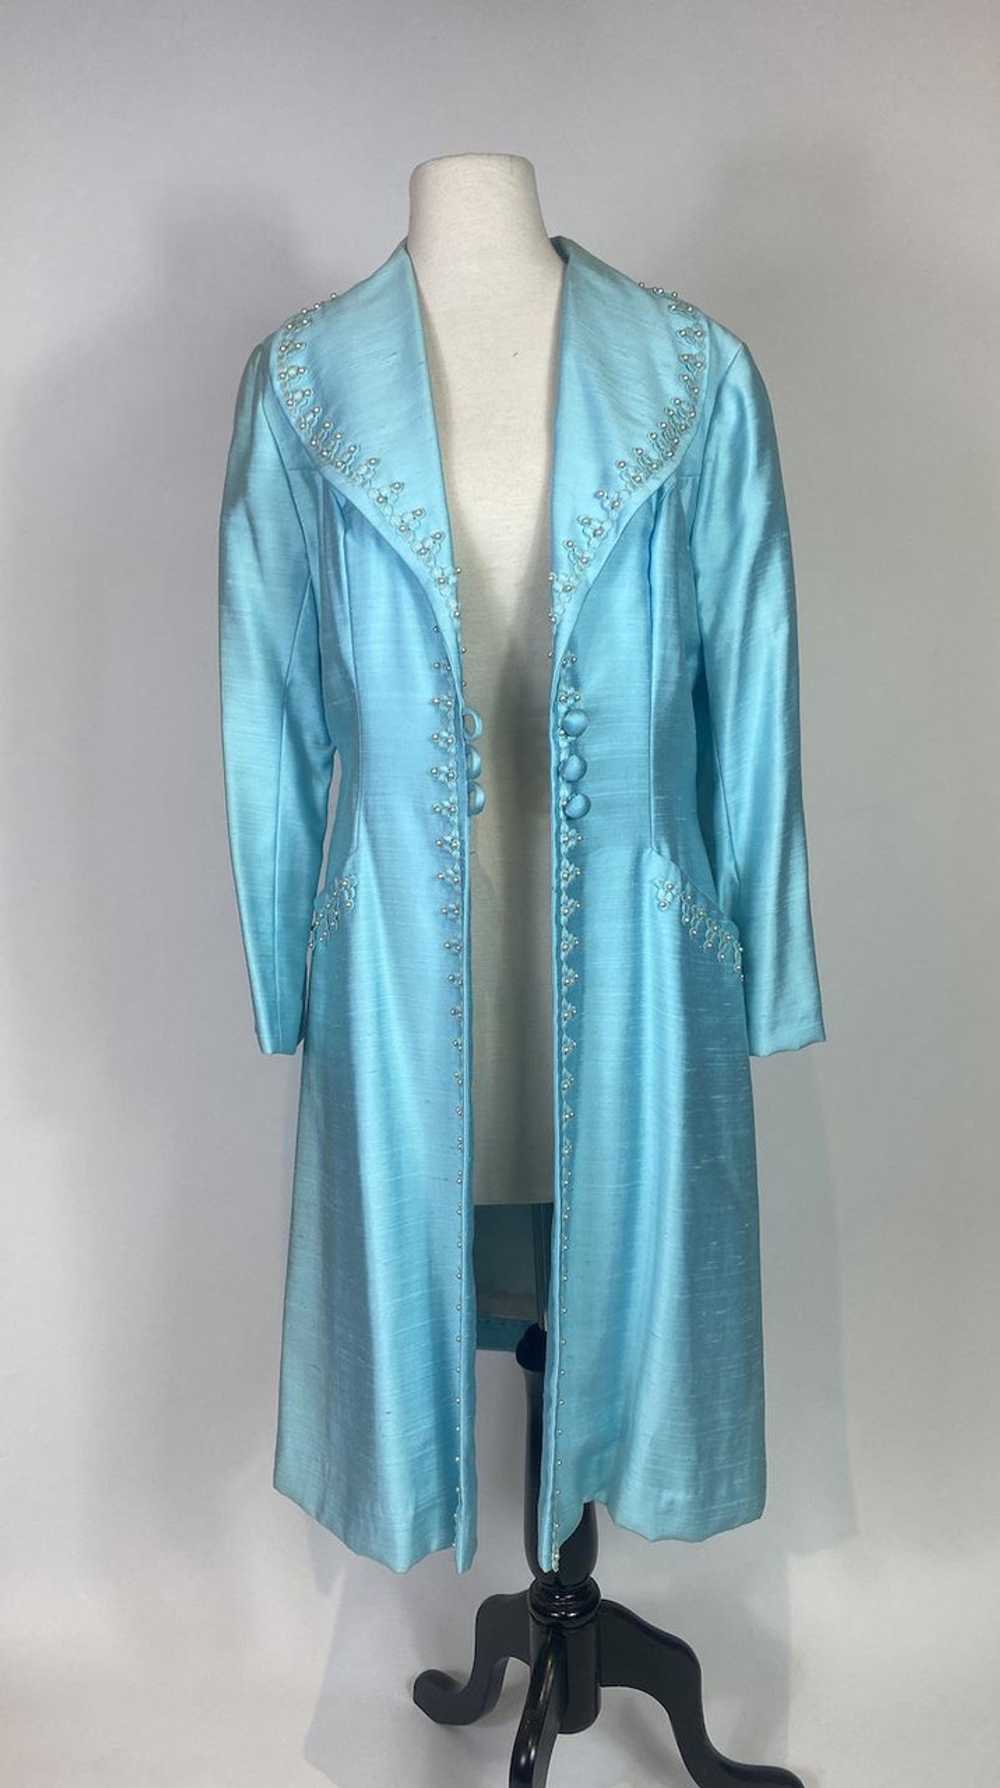 1960s Alfred Werber Blue Embellished Coat - image 7